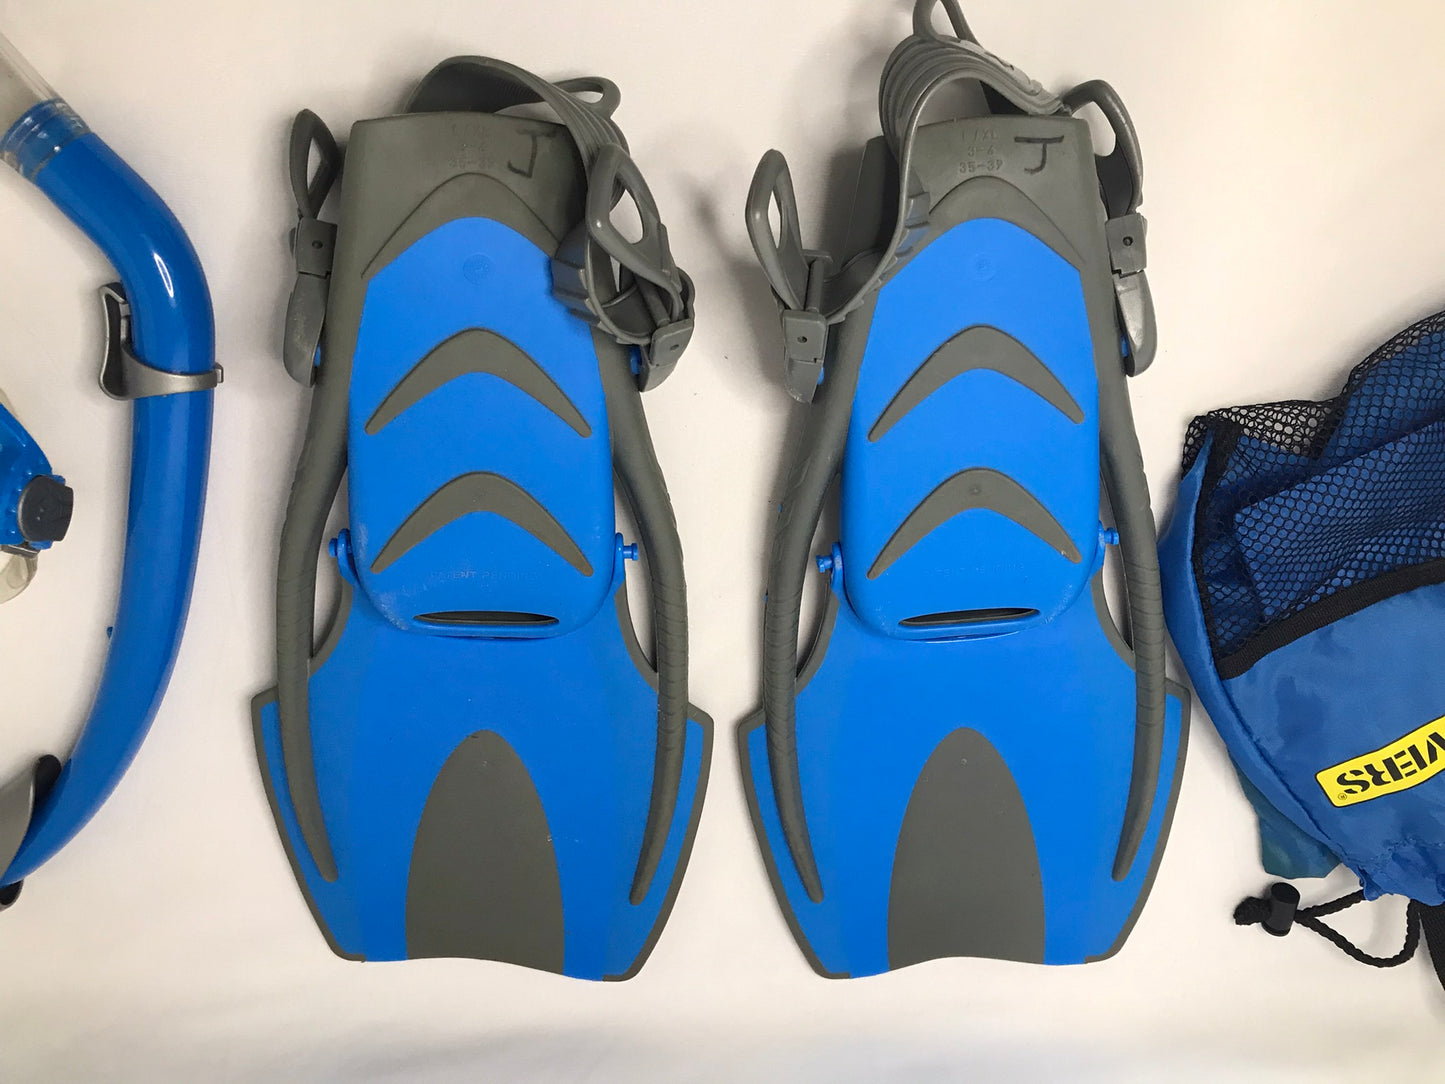 Snorkel Dive Fins Set Child Shoe Size 3-6 Youth US Divers Blue Black Excellent